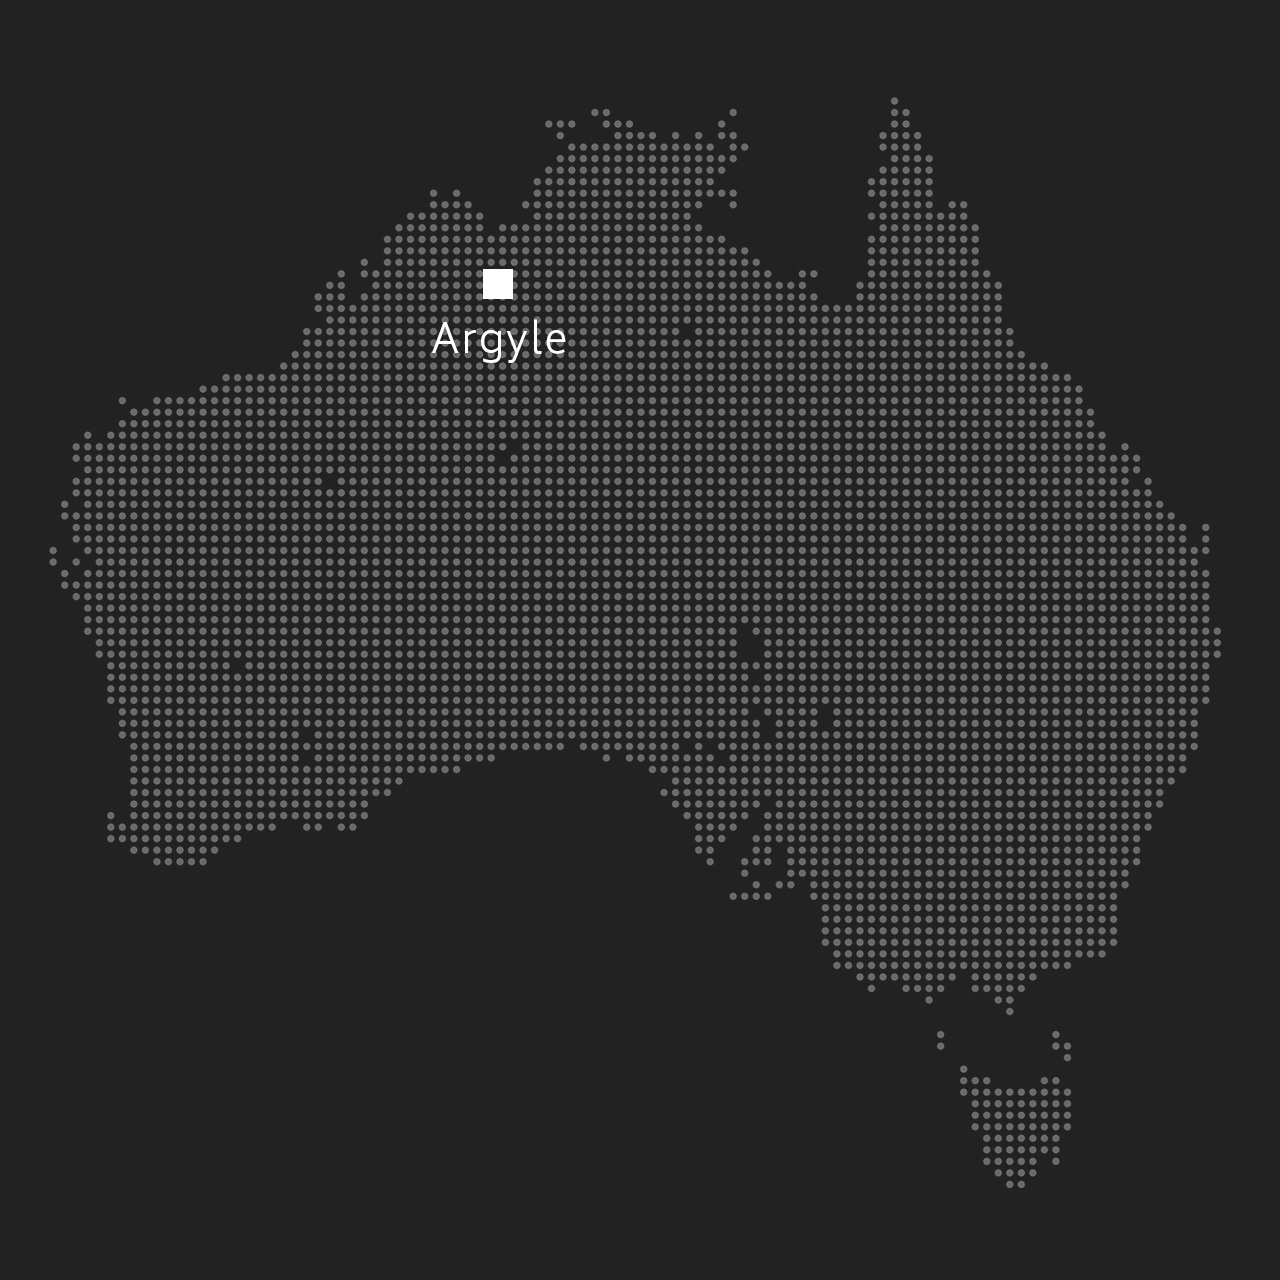 オーストラリア地図｜アーガイル鉱山の位置